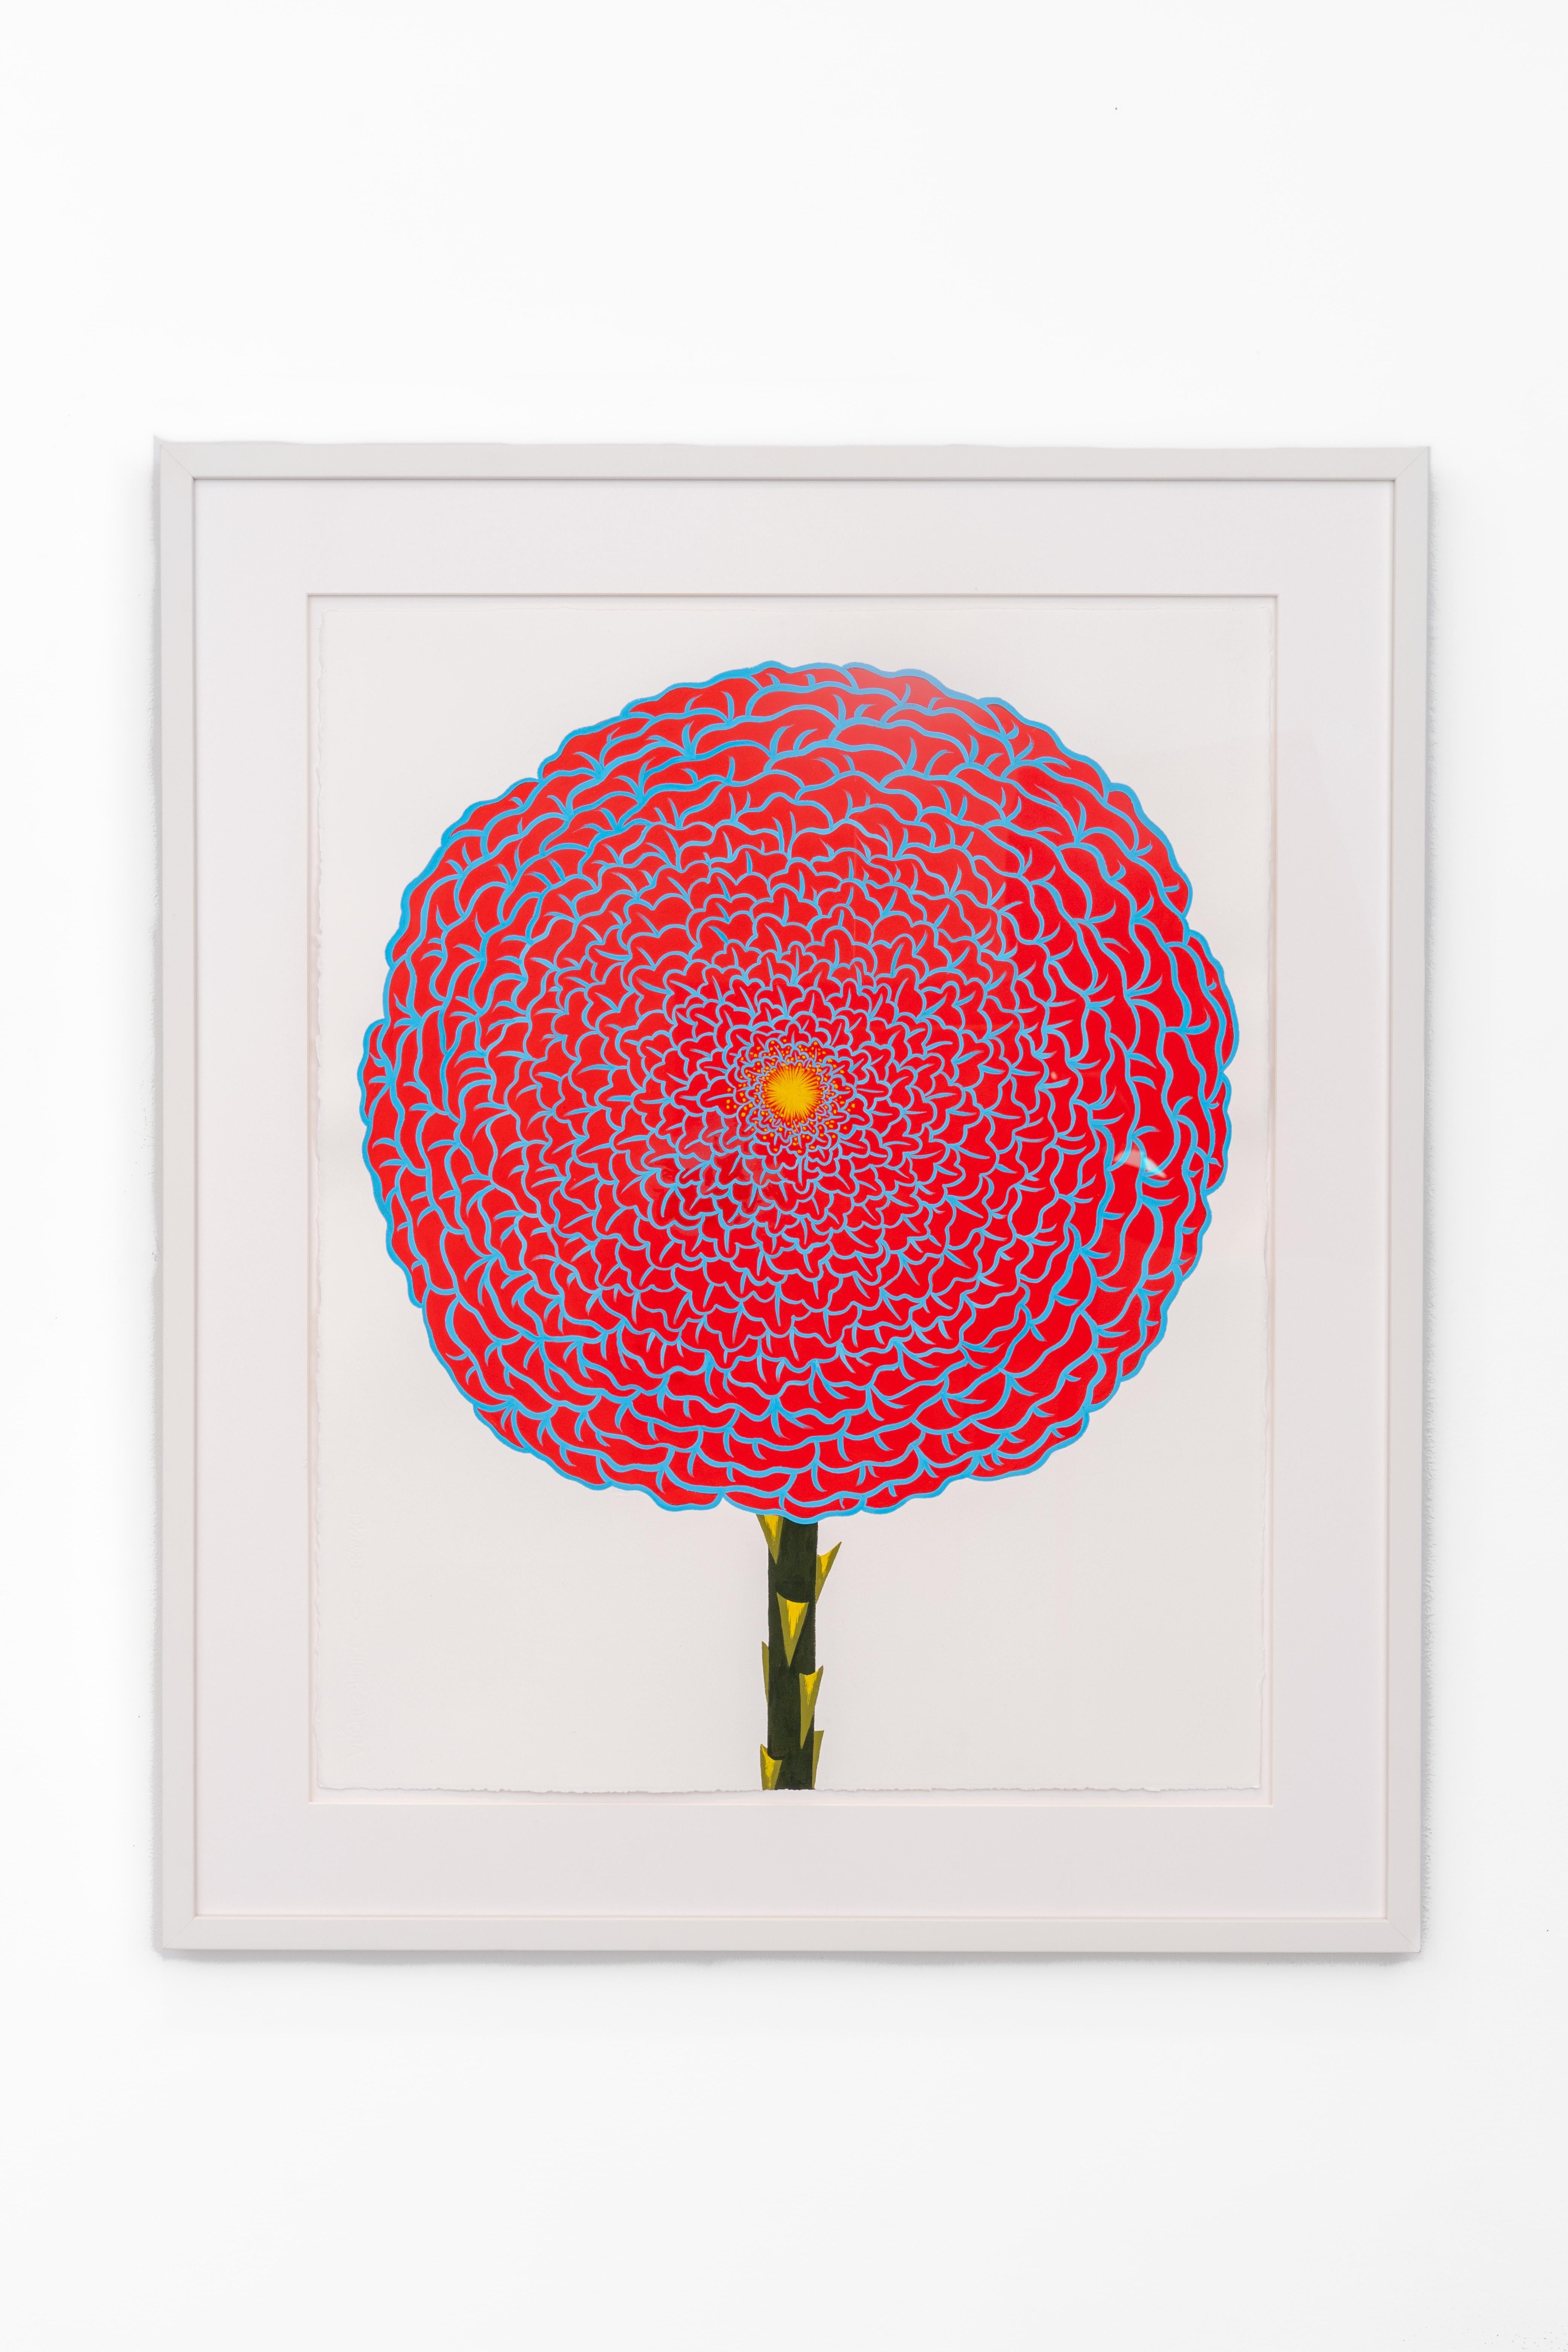 Rose rouge et céruléenne (peinture de nature morte abstraite sur papier d'une fleur rouge) - Painting de Joy Taylor